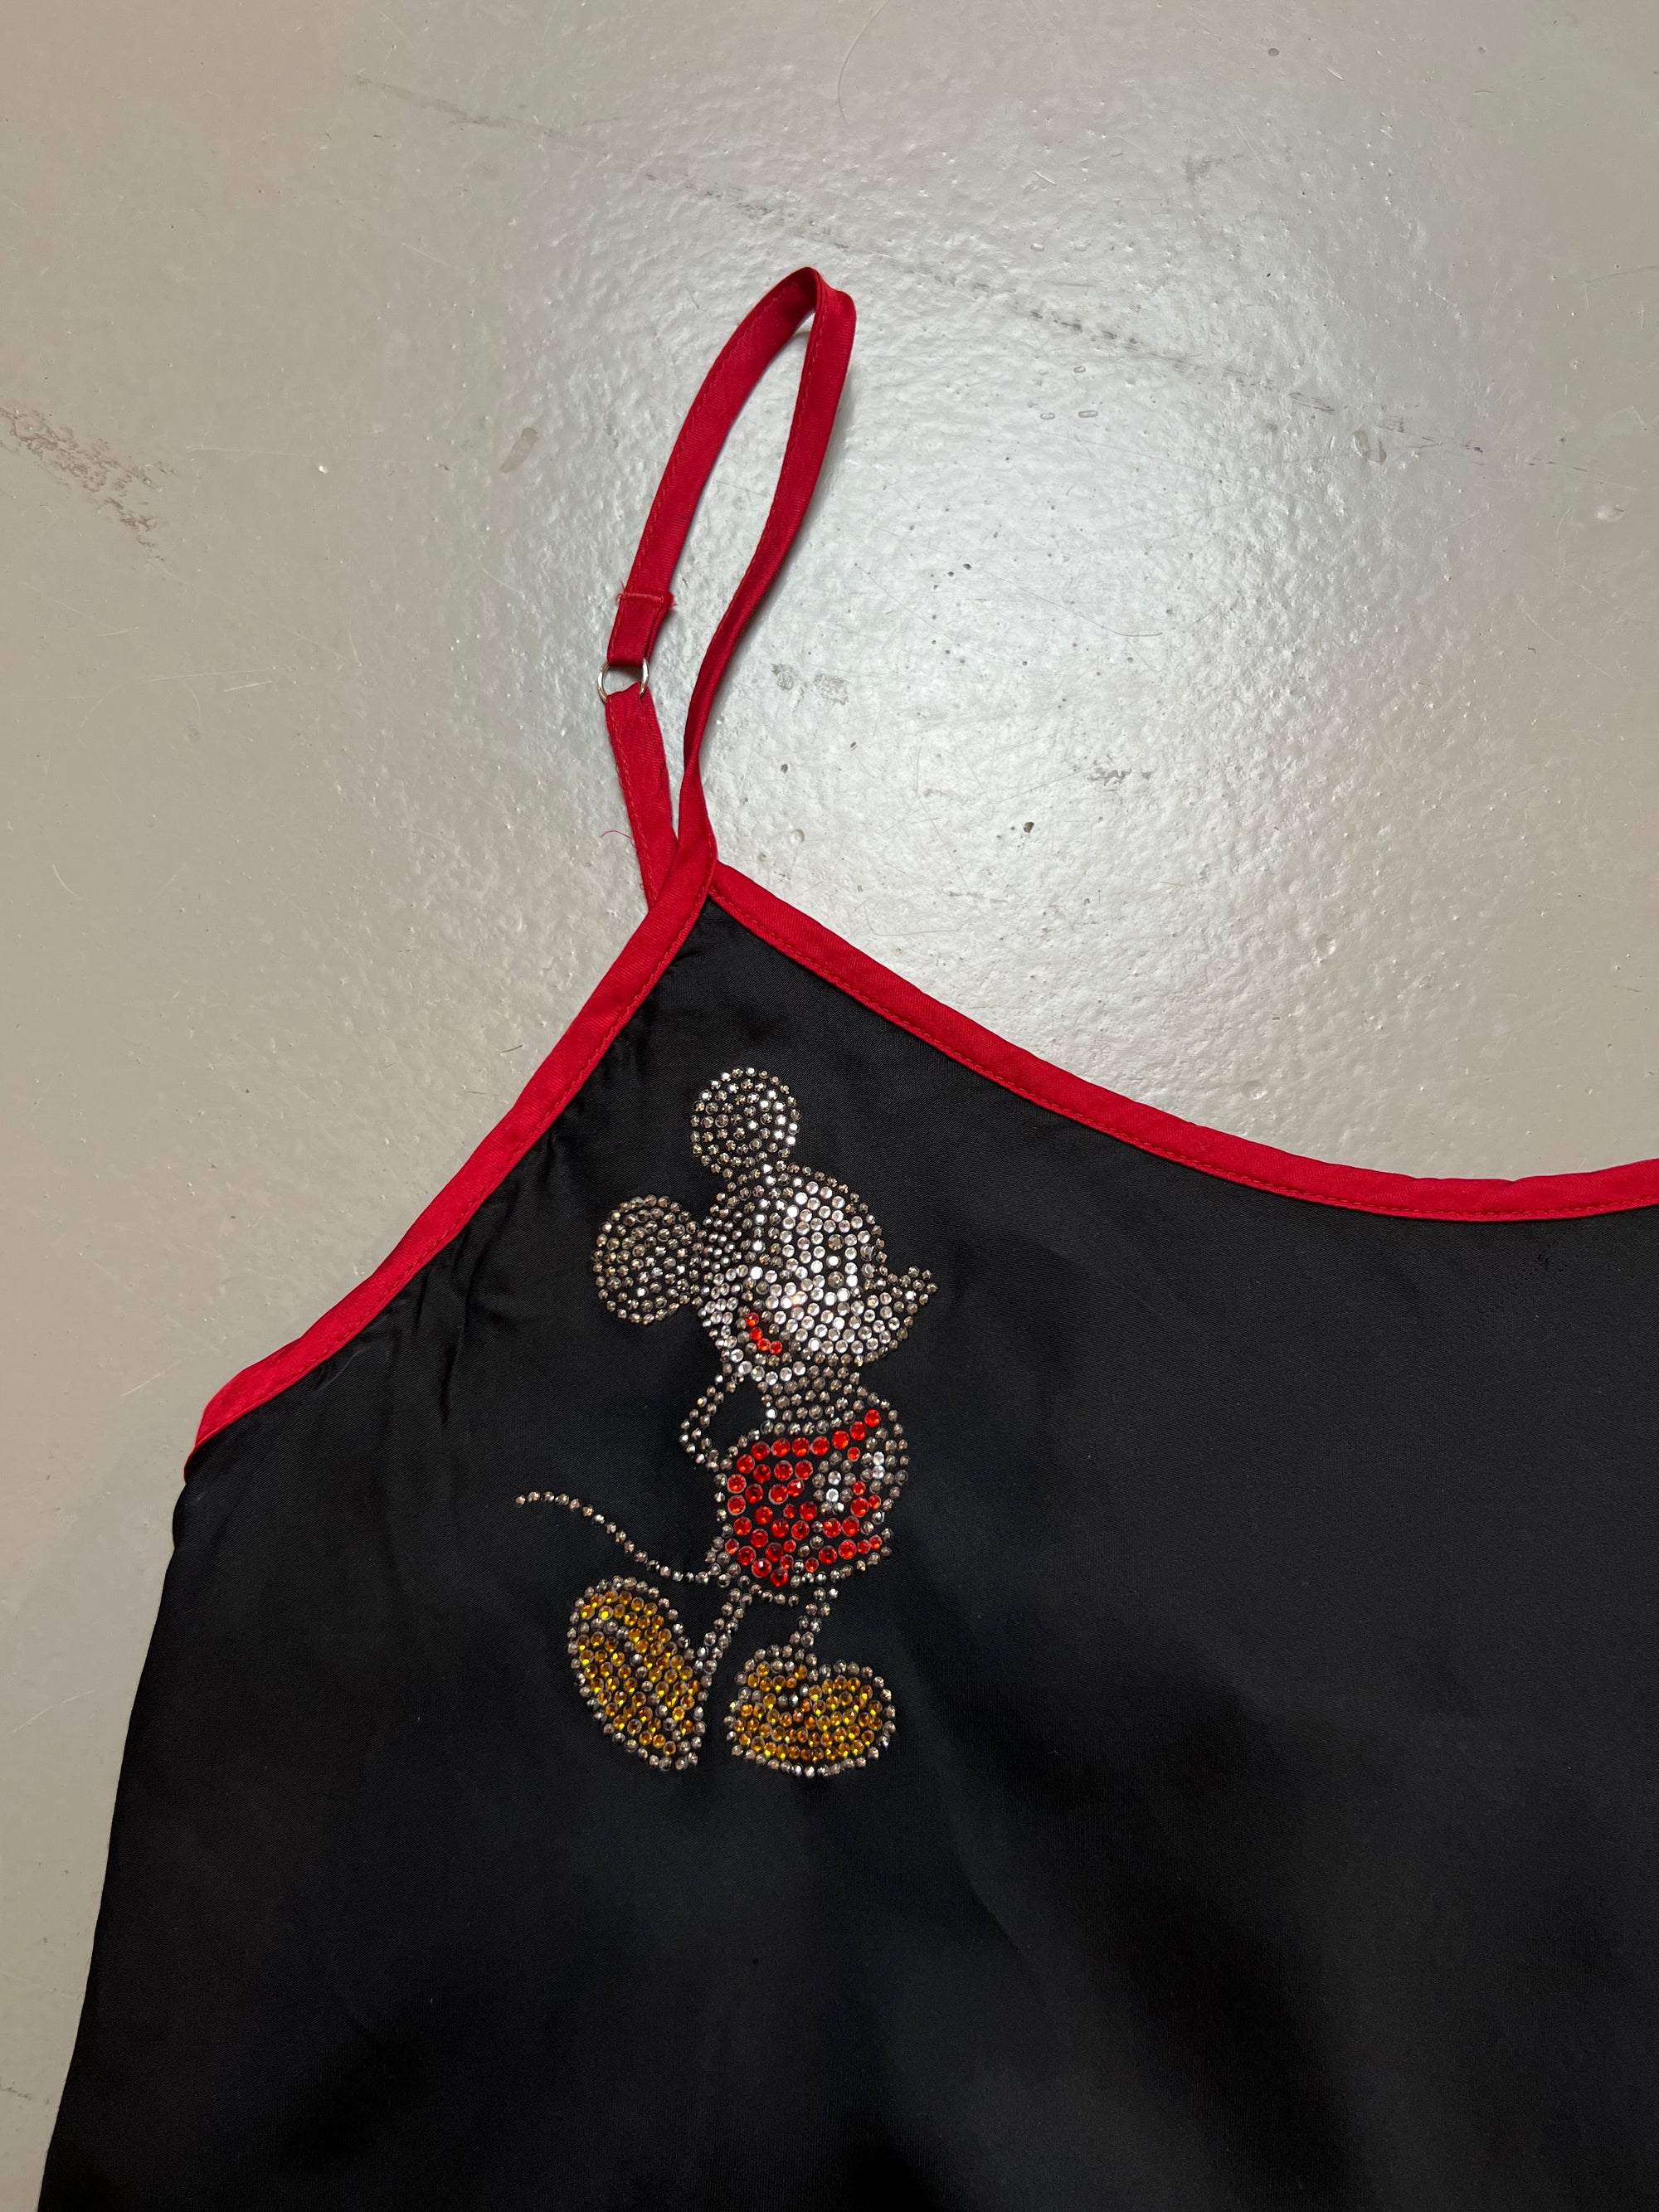 Produkt Bild Vintage Slip in Top/Dress Black S/M Disney von Detail print.